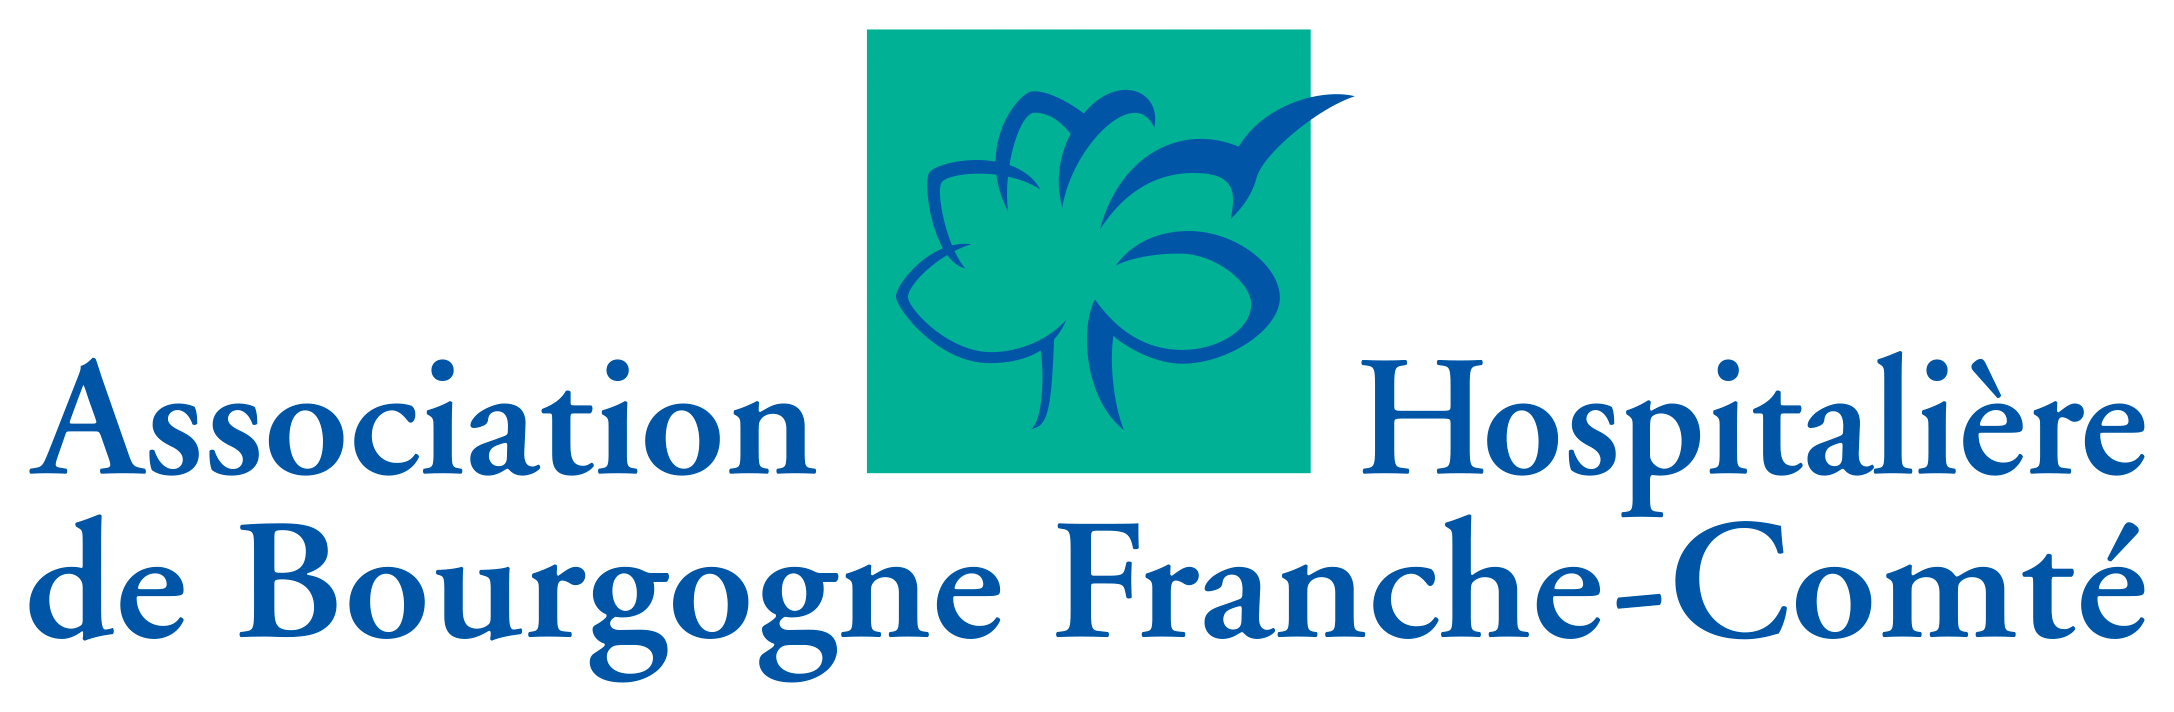 AHBFC - ASSOCIATION HOSPITALIERE DE BOURGOGNE FRANCHE-COMTE